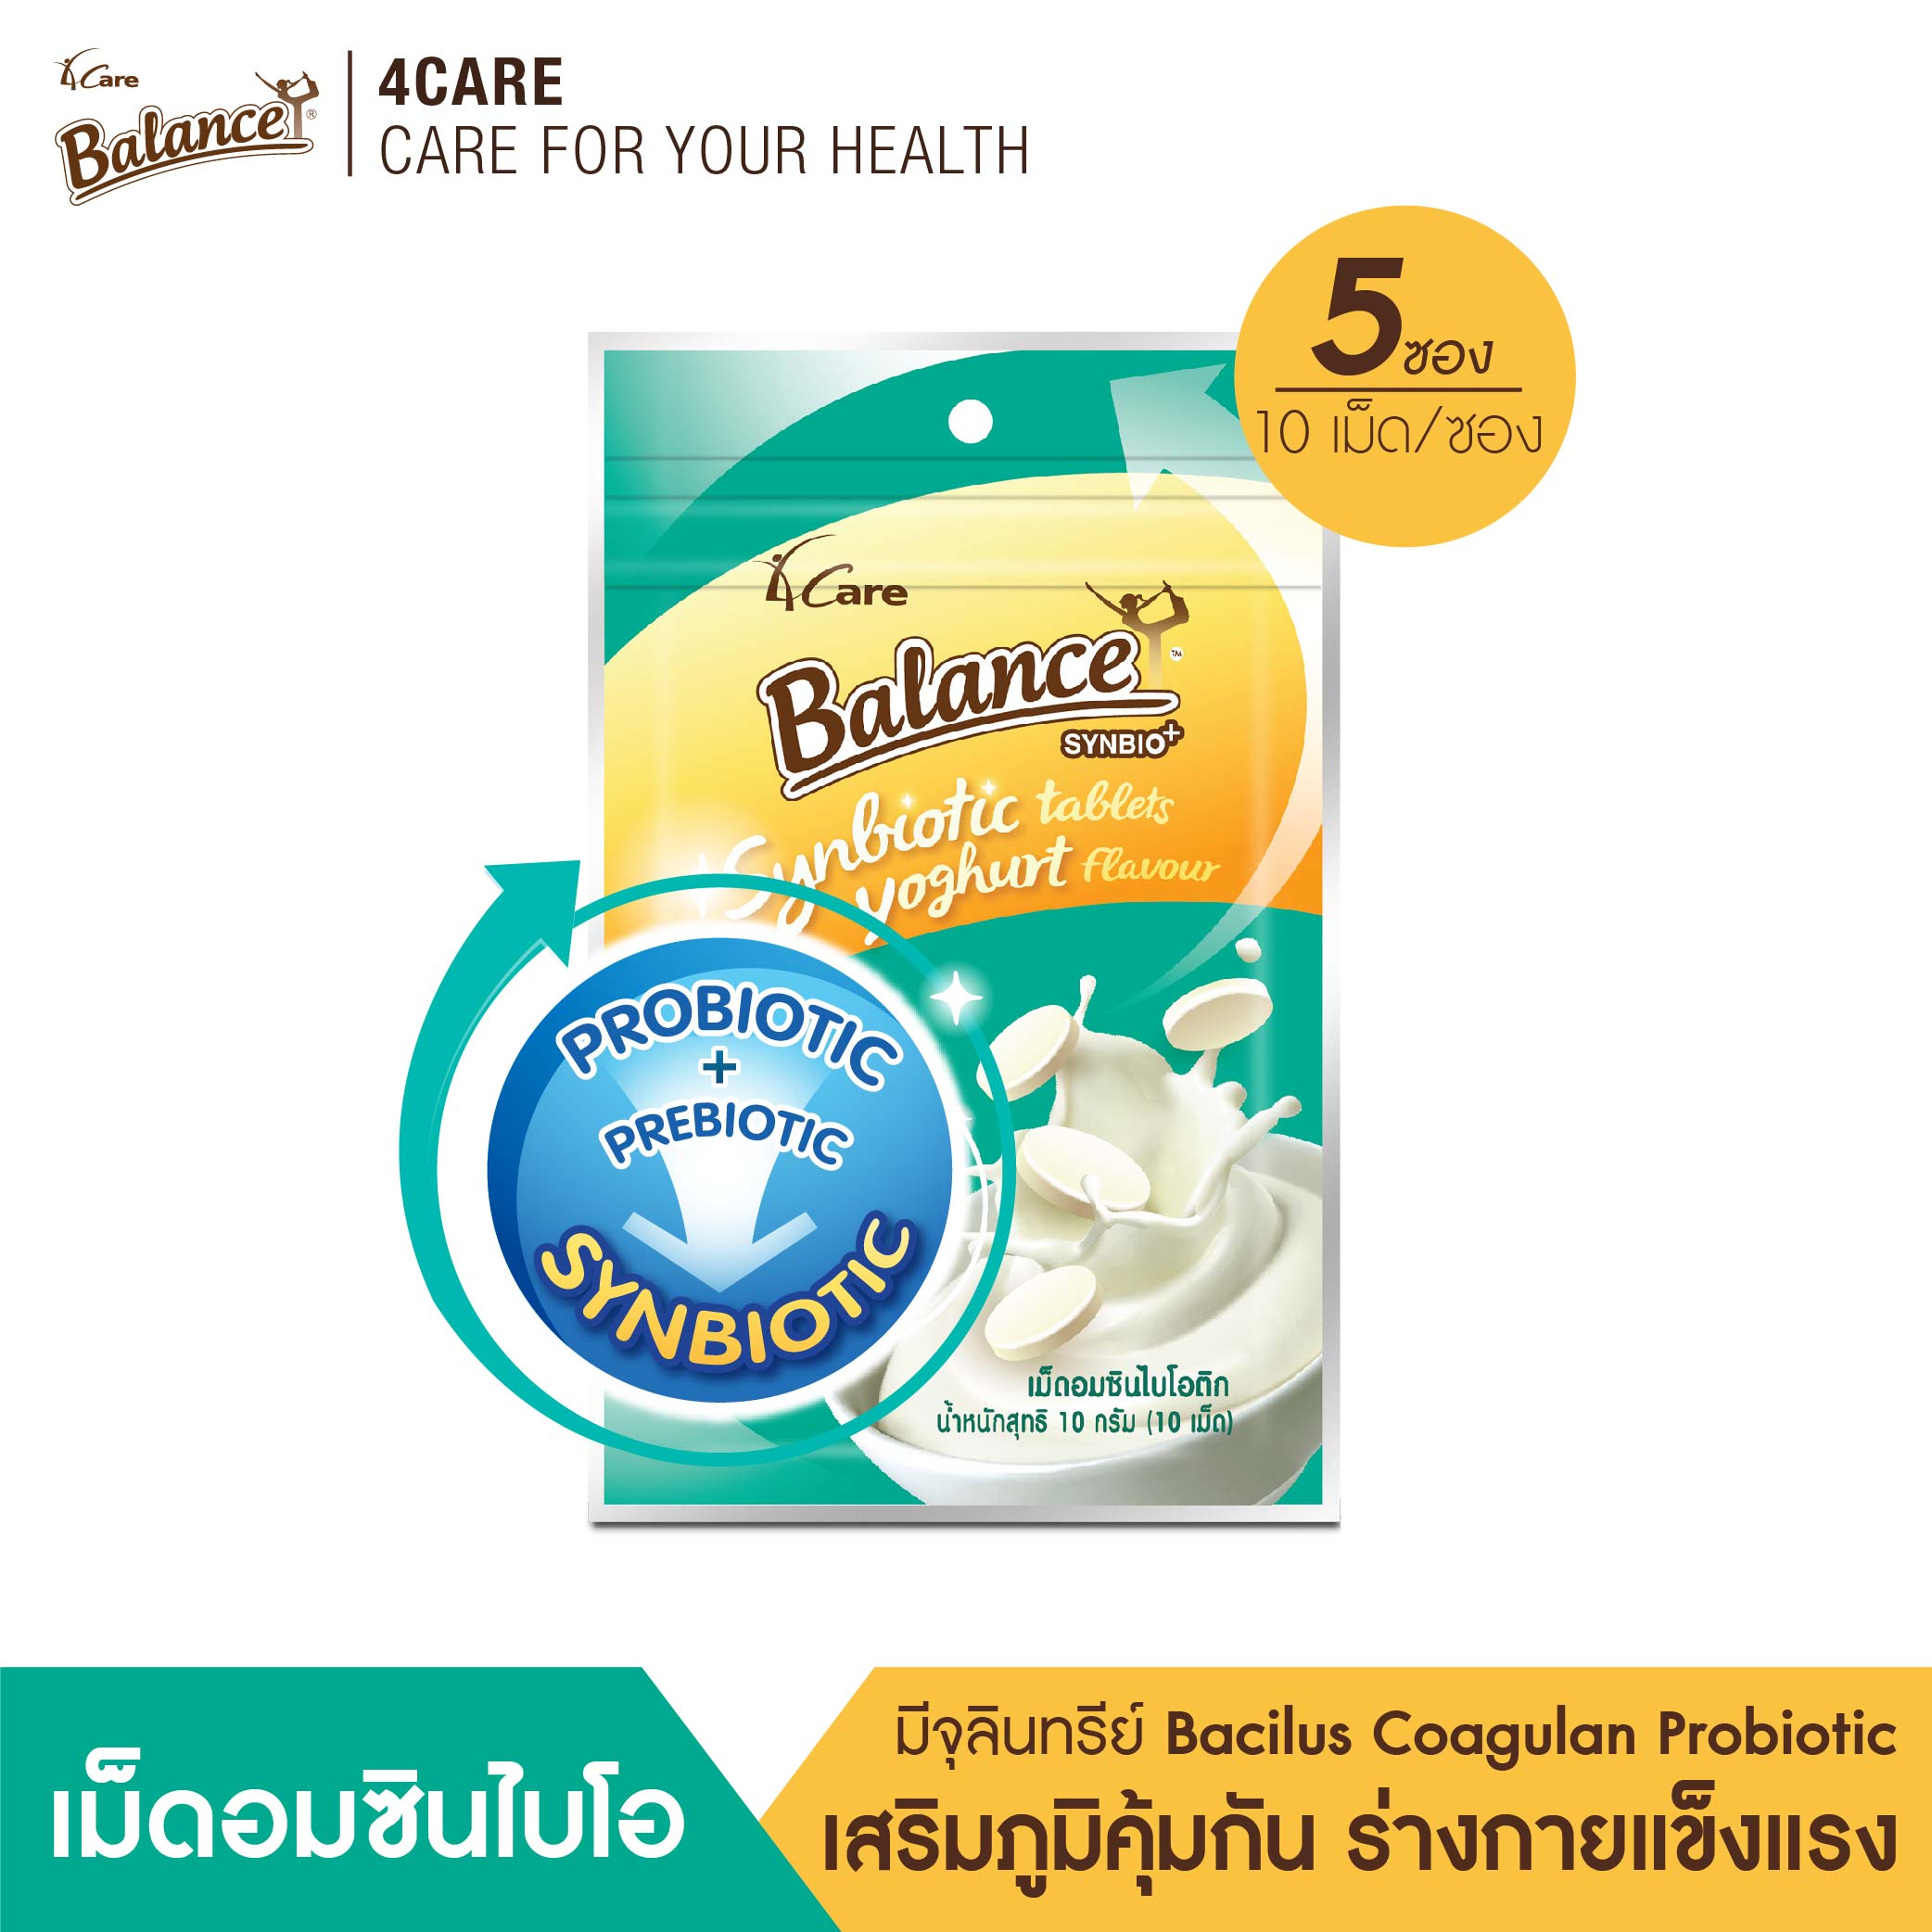 บาลานซ์ เม็ดอม ซินไบโอติก รสโยเกิร์ต (10g X 5ซอง) ช่วยเสริมสร้างภูมิคุ้มกันไม่ให้เจ็บป่วยง่าย BALANCE Synbiotic Tablets Yoghurt Flavor  4Care ฟอร์แคร์ สร้างภูมิคุ้มกัน Probiotic โพรไบโอติก Prebiotic พรีไบโอติก ลำไส้